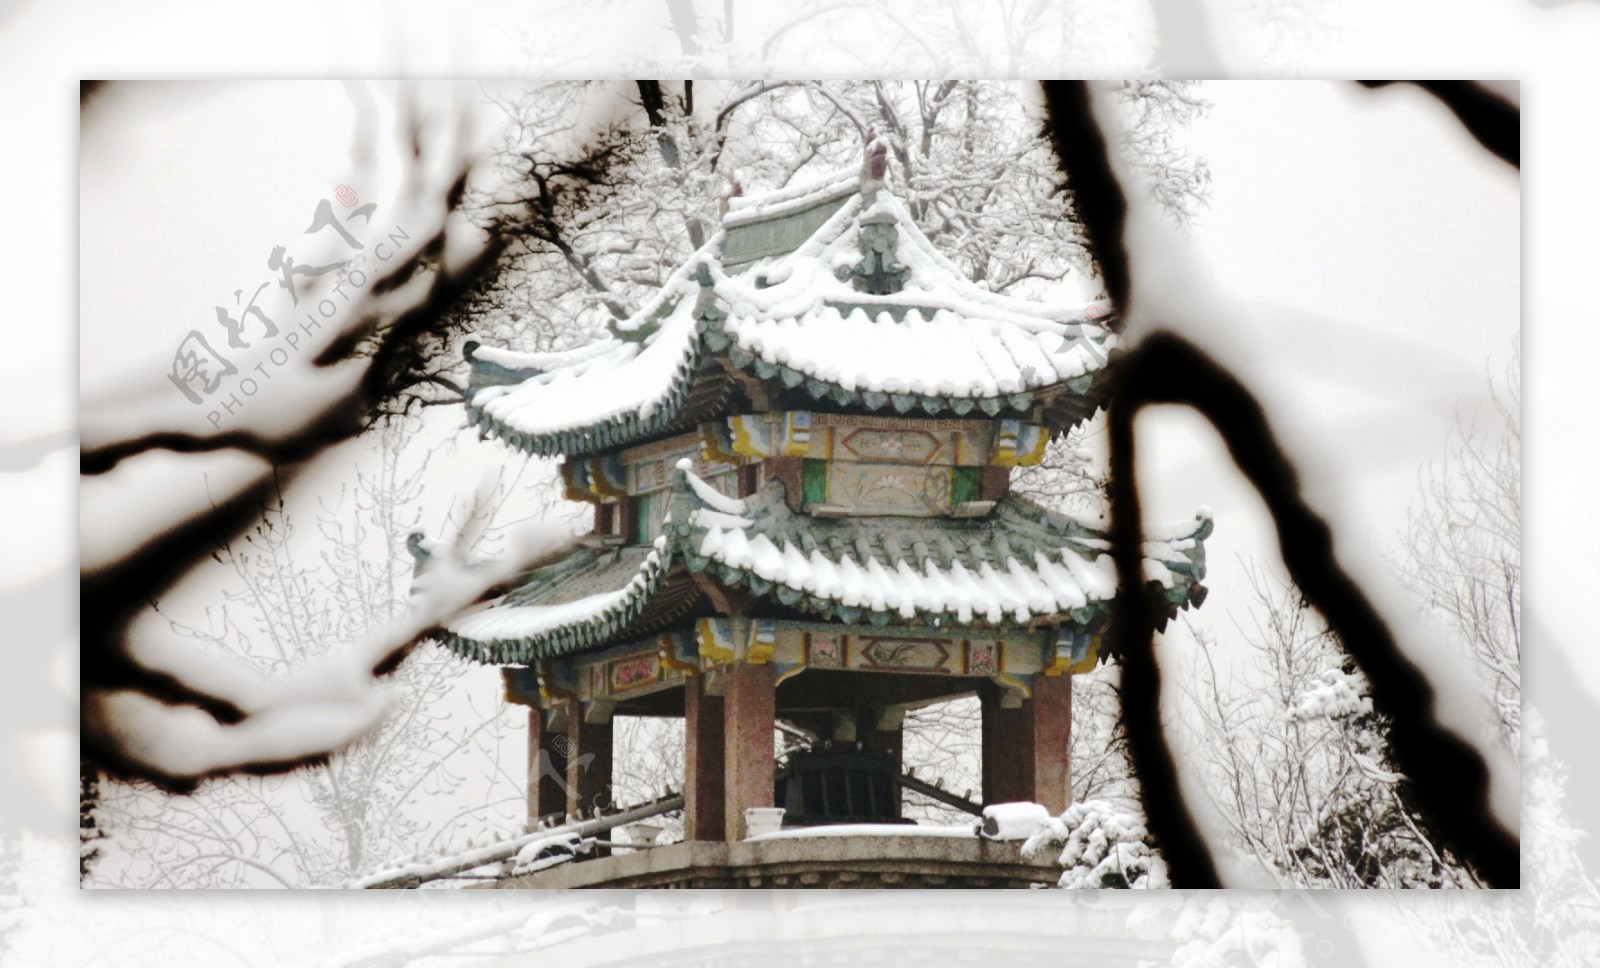 冬季亭台远景图片